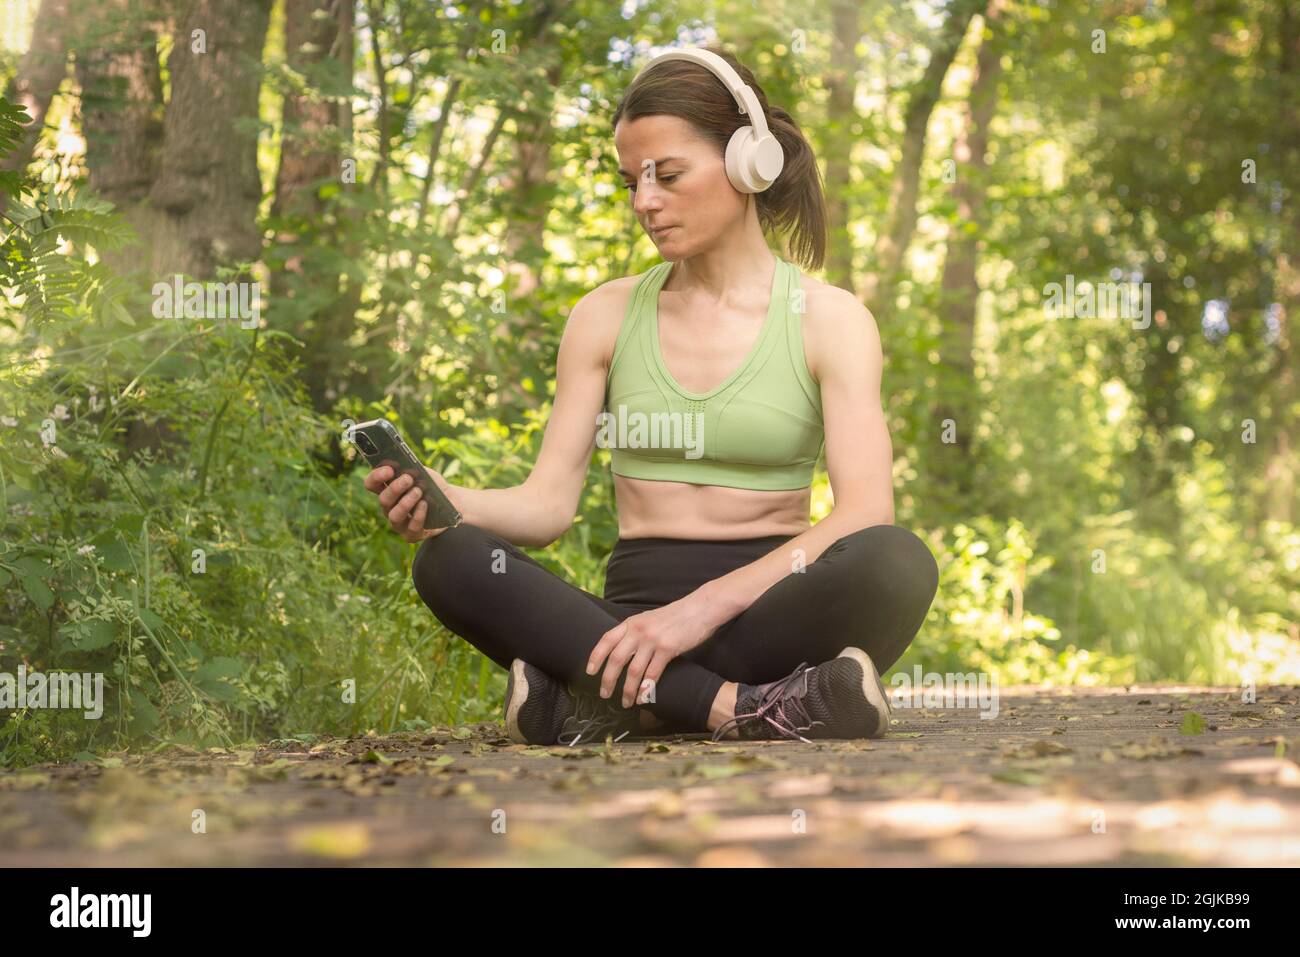 Sportliche Frau, die im aktiven Sitzen sitzt und Musik über Kopfhörer hört. Headspace. Stockfoto